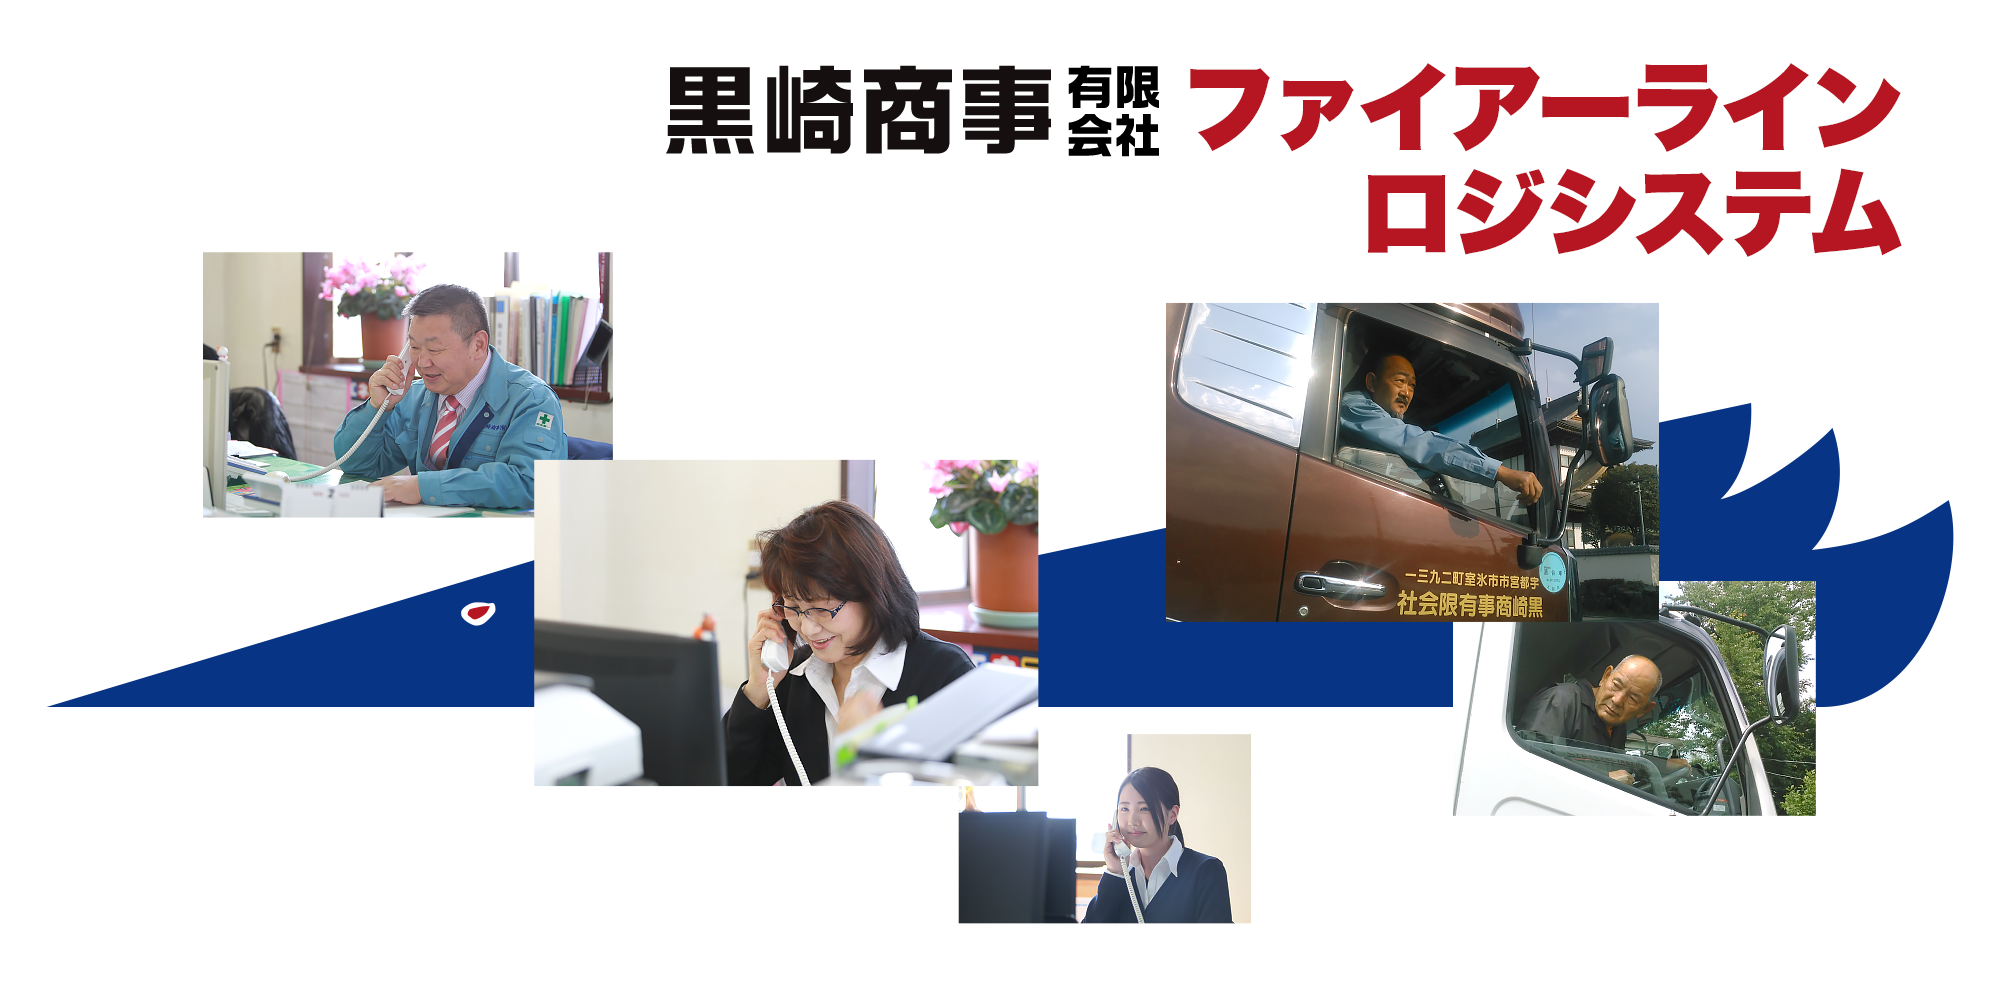 黒崎商事は本州と北海道を結ぶ運送会社です